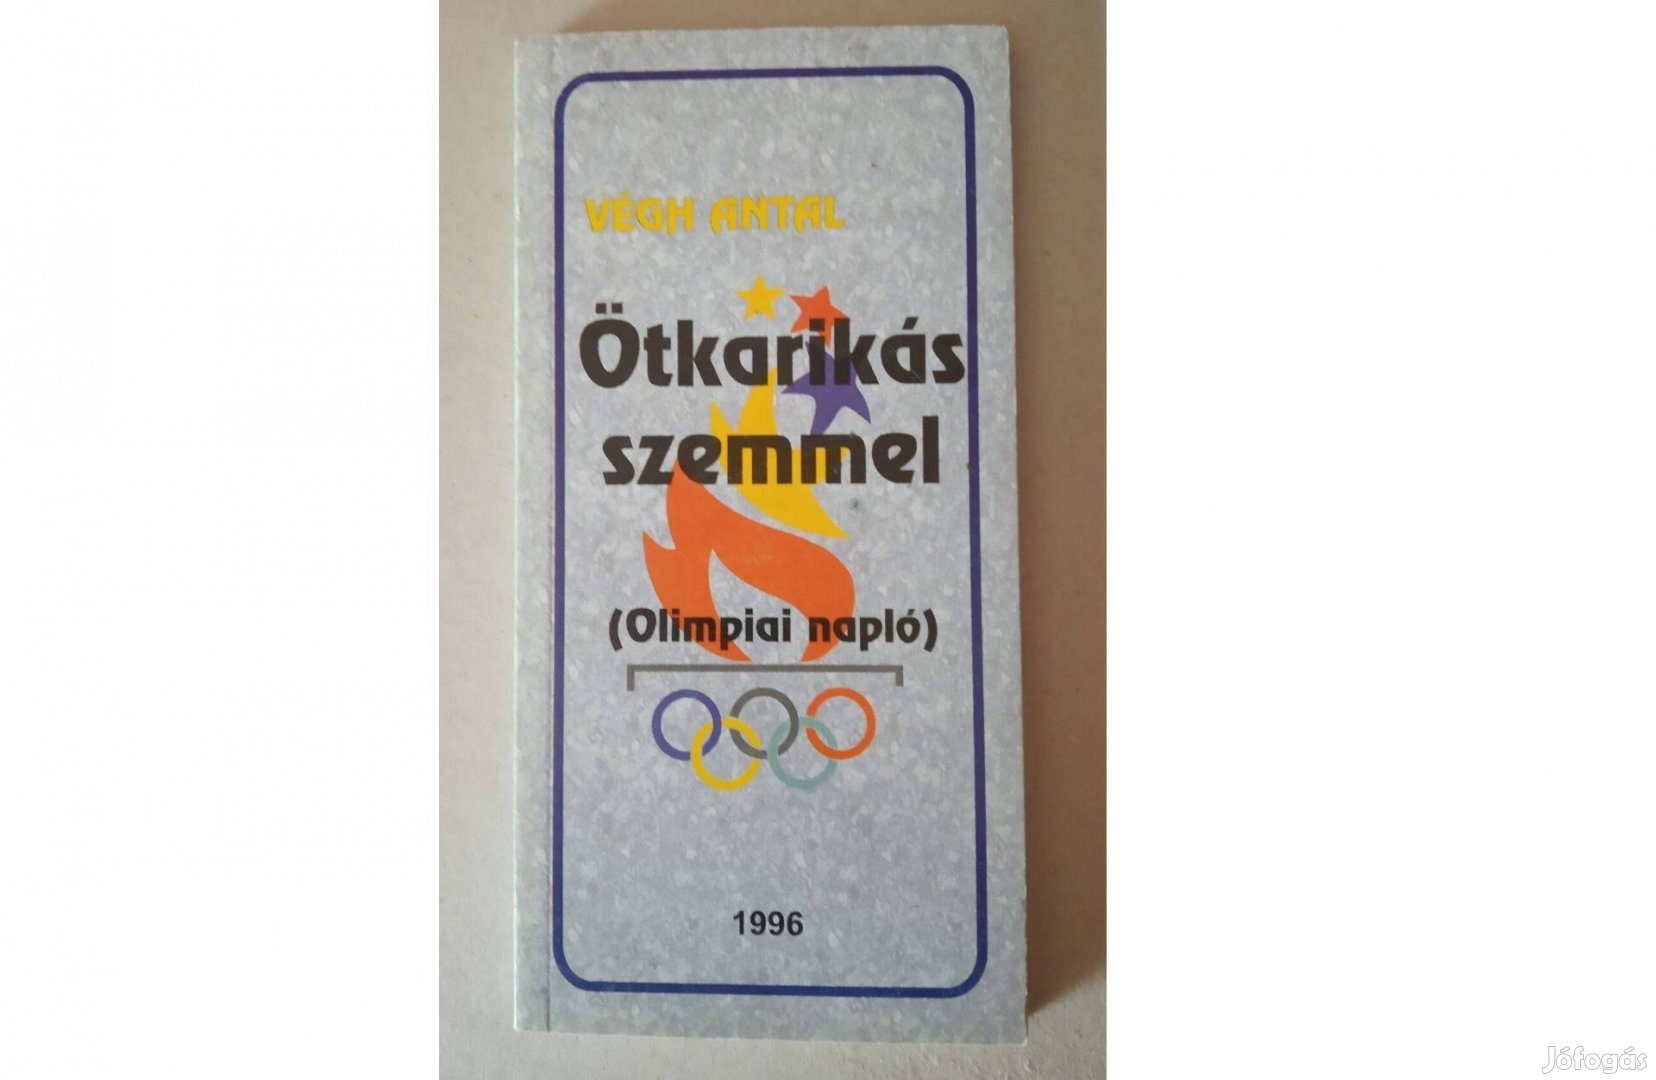 Végh Antal: Ötkarikás szemmel című könyve. 1996-os